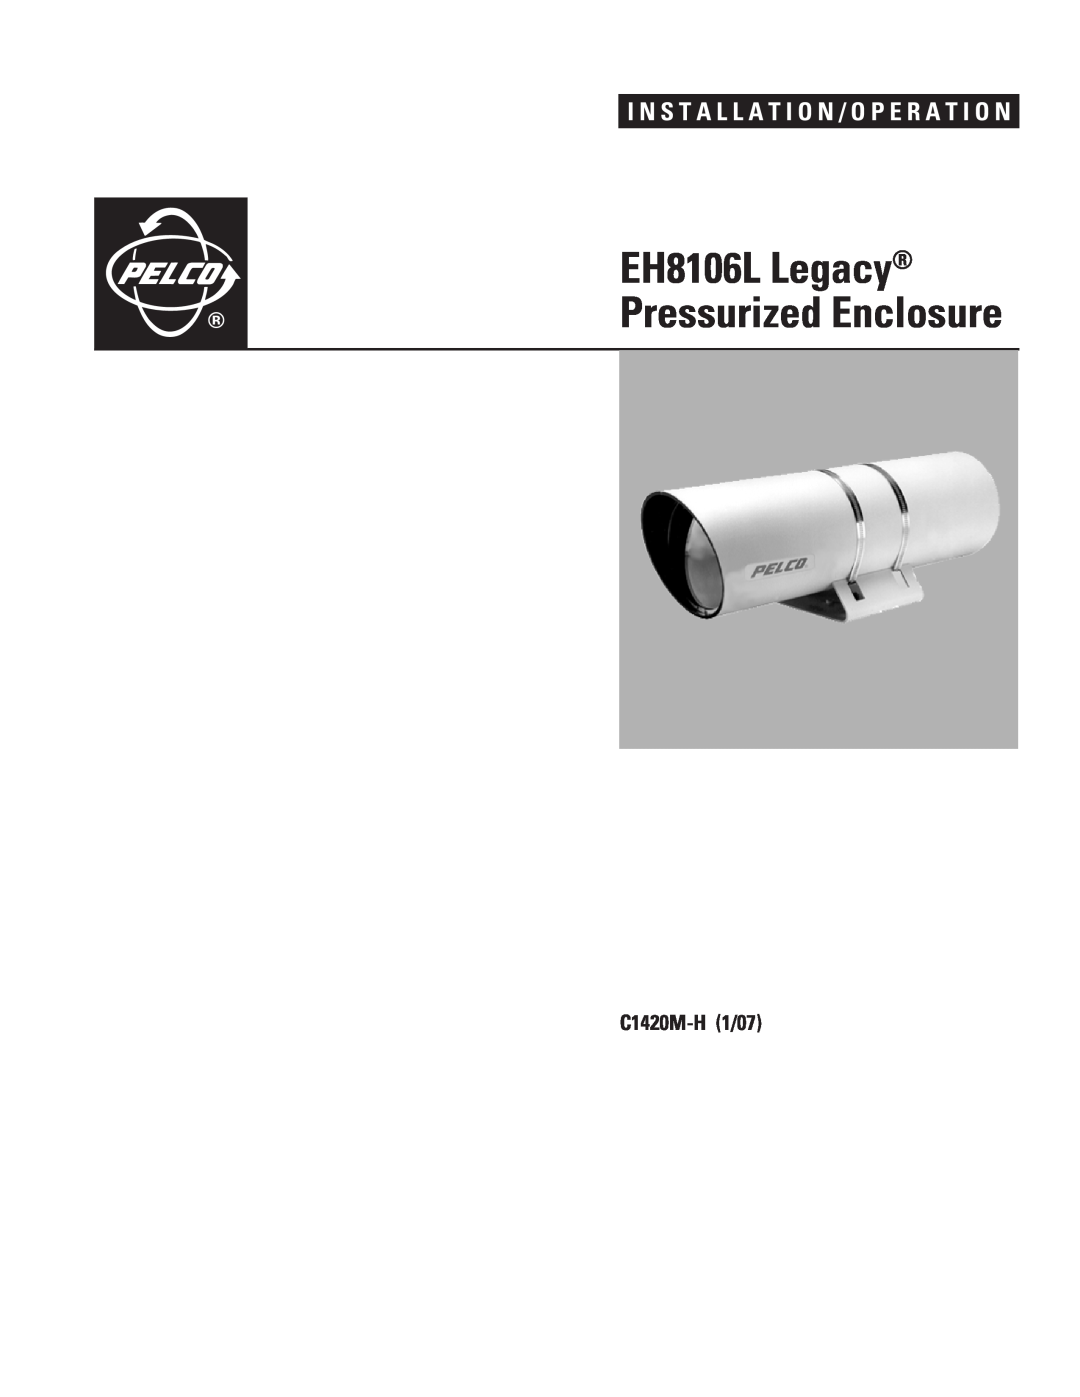 Pelco manual EH8106L Legacy, Pressurized Enclosure, I N S T A L L A T I O N / O P E R A T I O N, C1420M-H1/07 